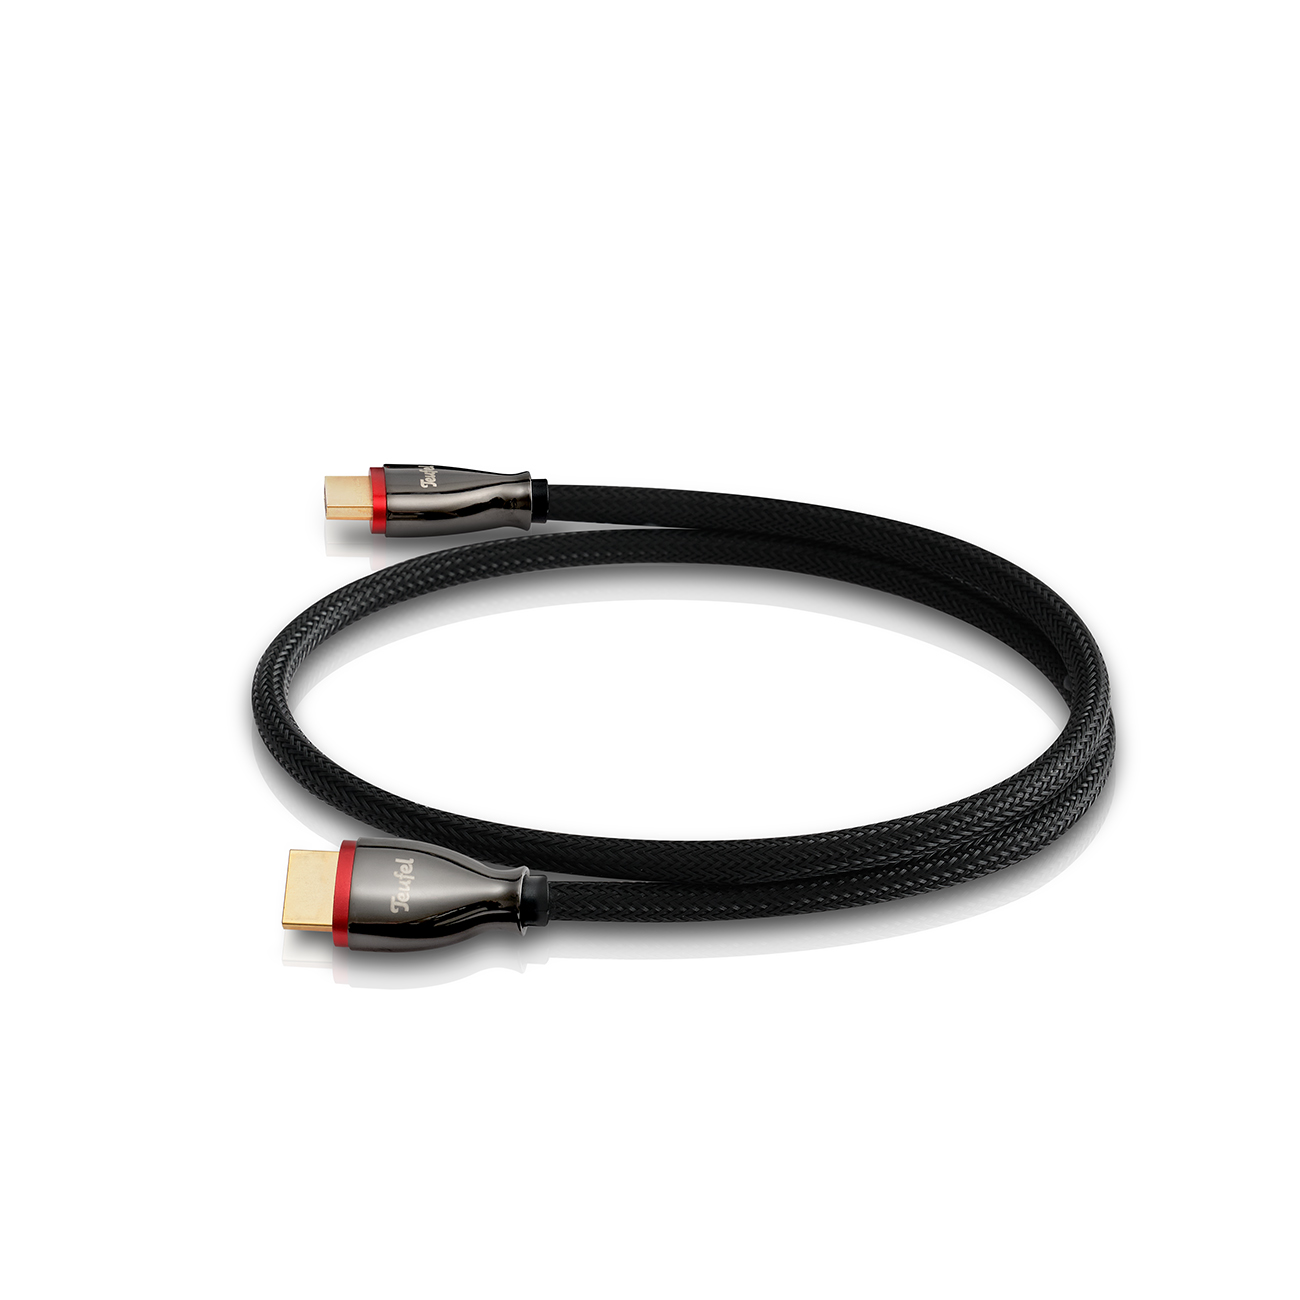 Teufel HDMI 2.1 kabel rond 0,75 m - Highspeed HDMI-kabel 2.1 specificaties: 4K 3D bij 50/60p en 8K transmissie - zwart